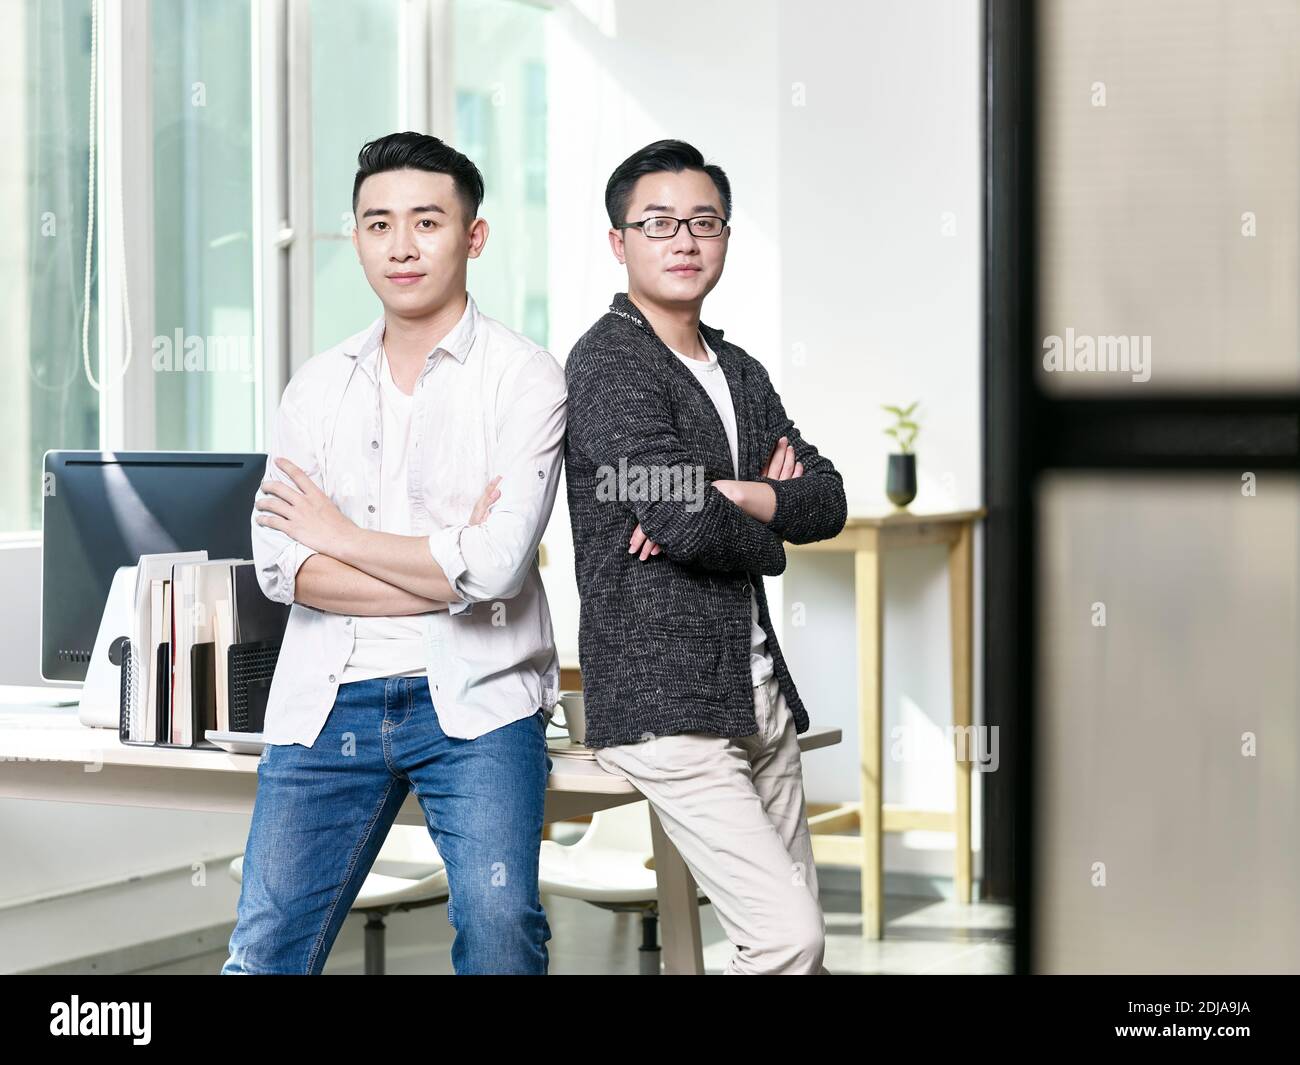 Portrait von zwei jungen asiatischen Geschäftsmännern, die sich zurück zu posieren Zurück im Büro mit Blick auf die Kamera Stockfoto